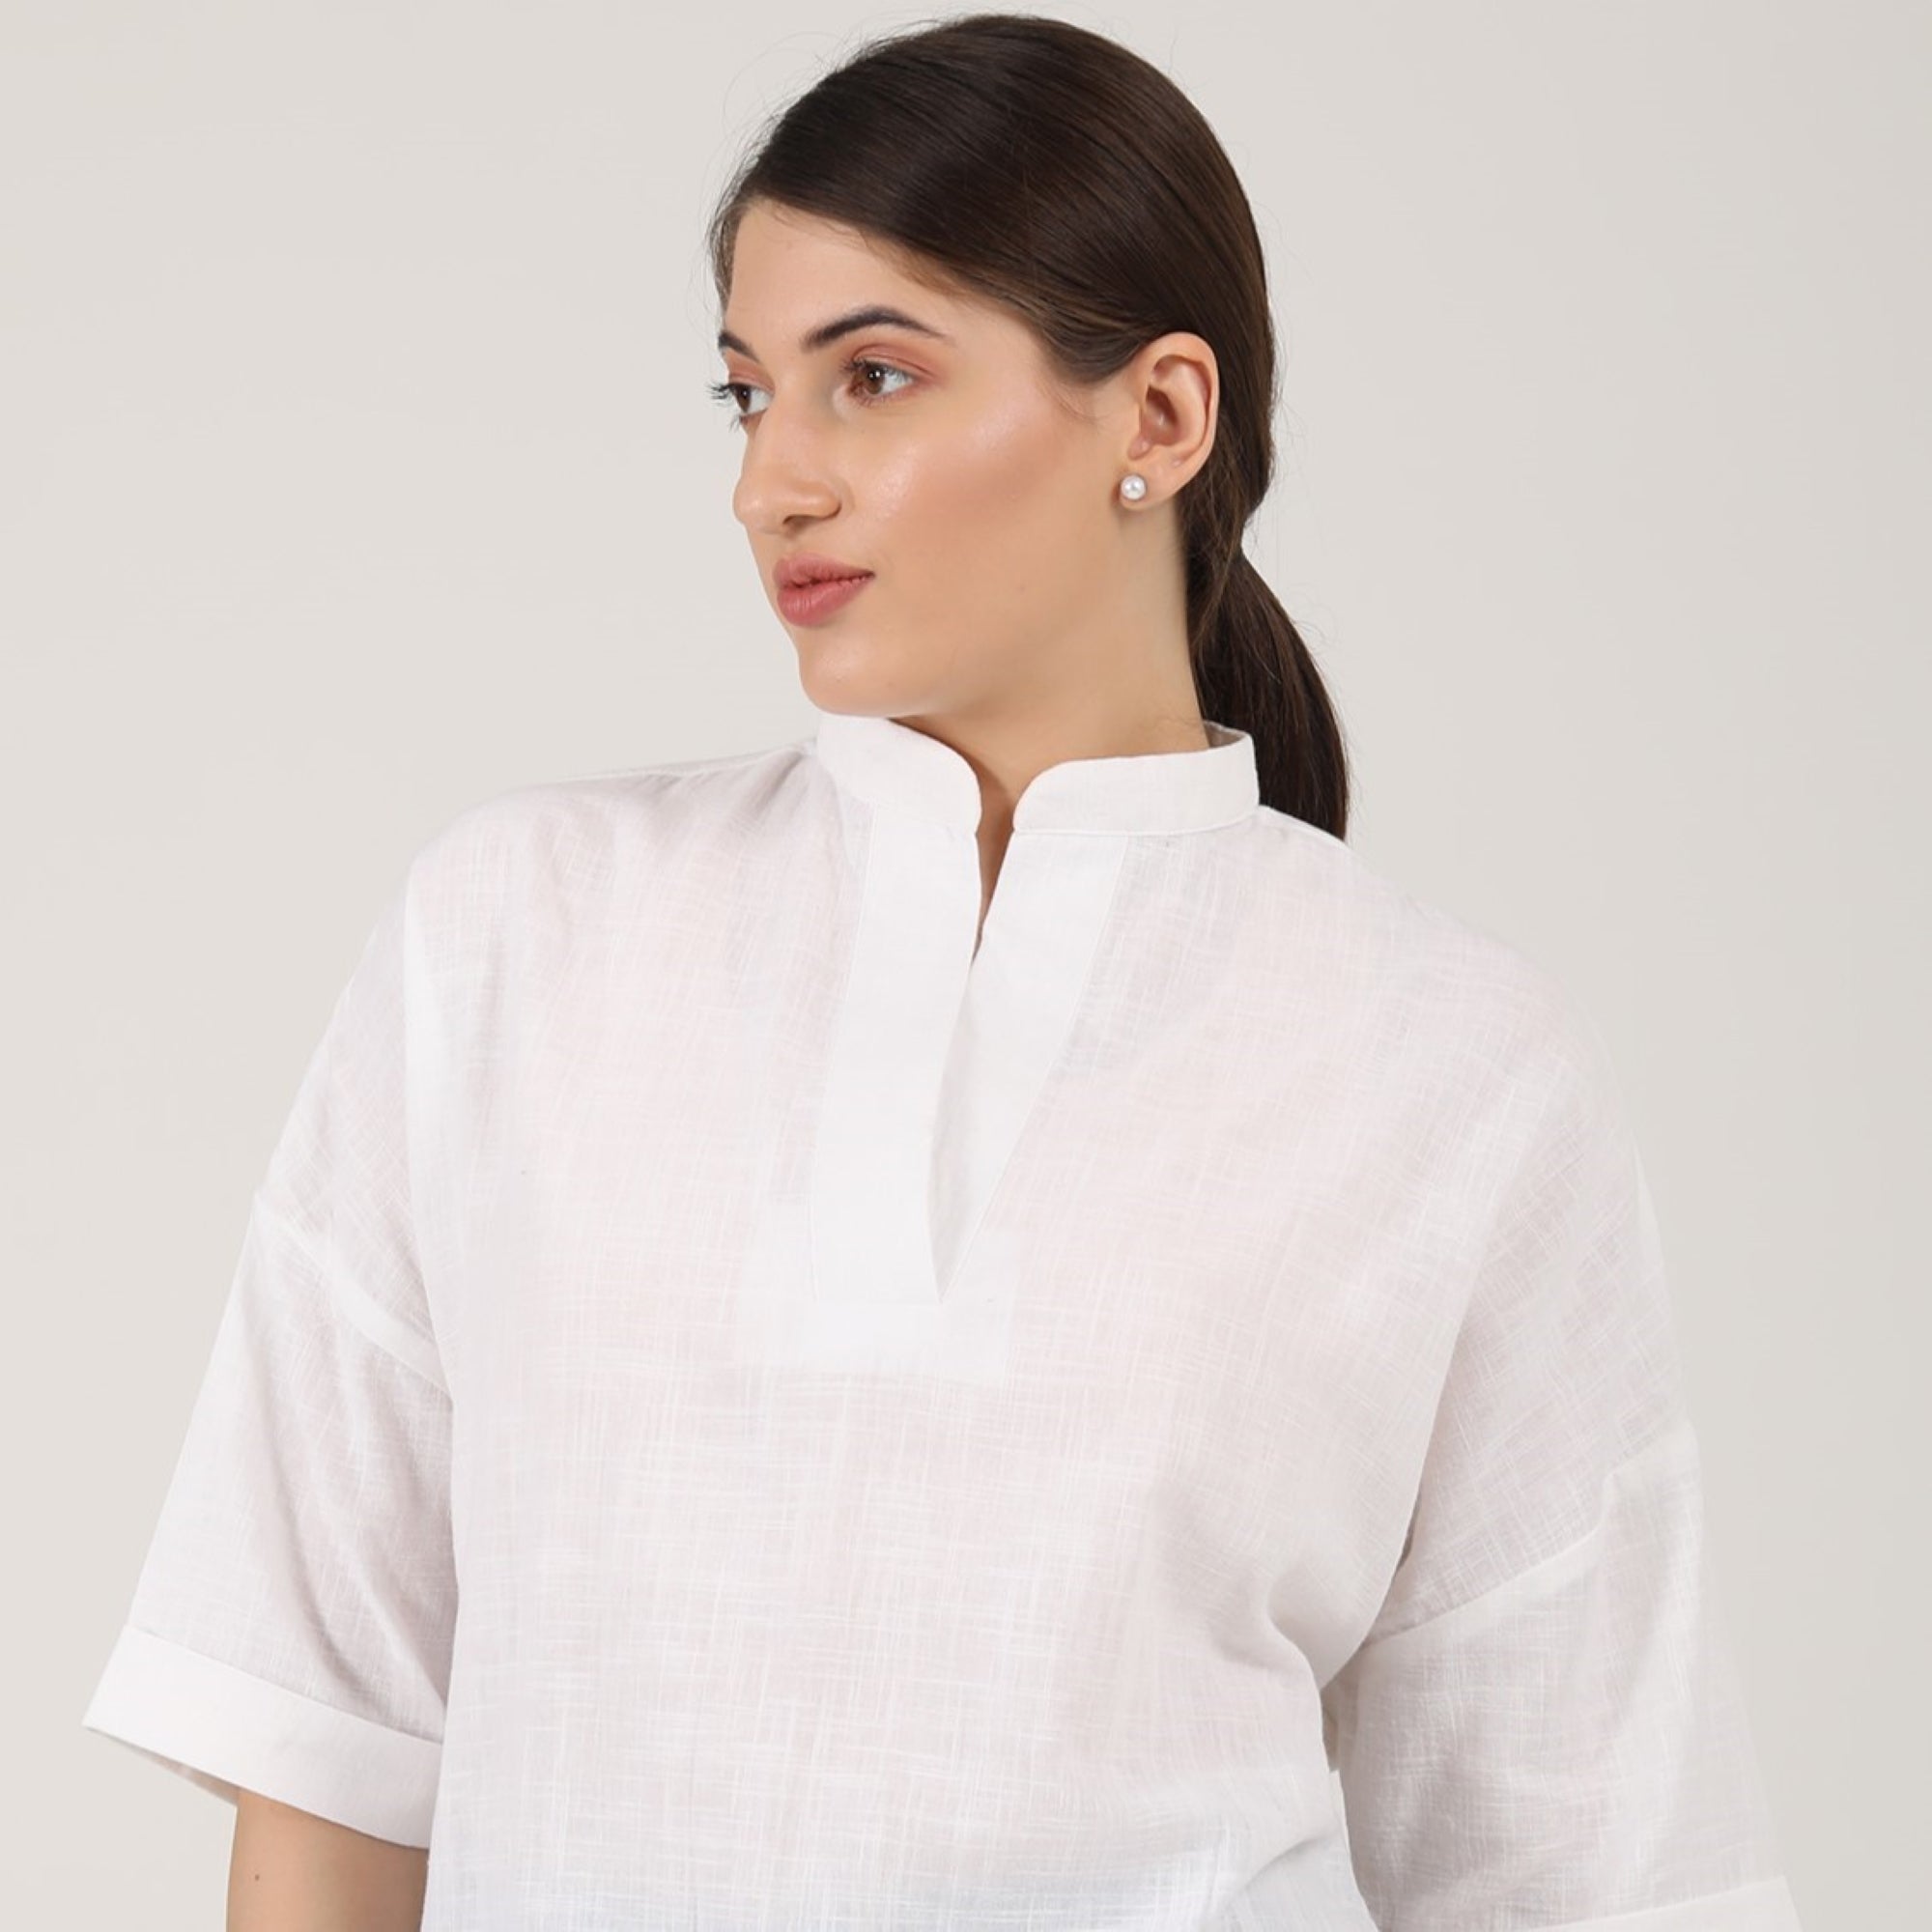 Kimono Top - White